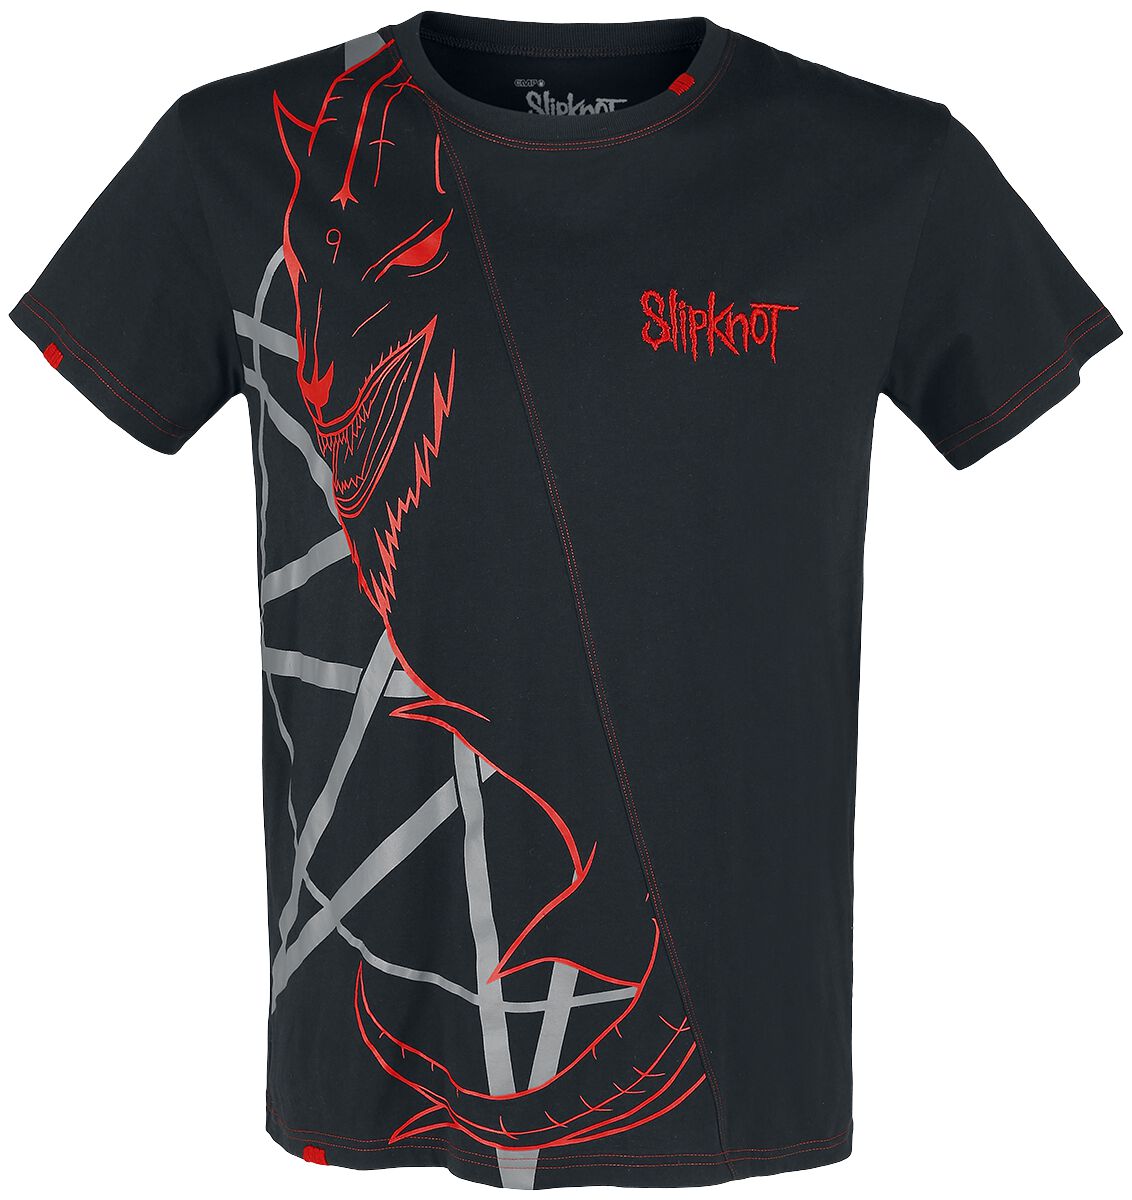 Slipknot T-Shirt - EMP Signature Collection - S bis 5XL - für Männer - Größe 5XL - schwarz/rot  - EMP exklusives Merchandise!